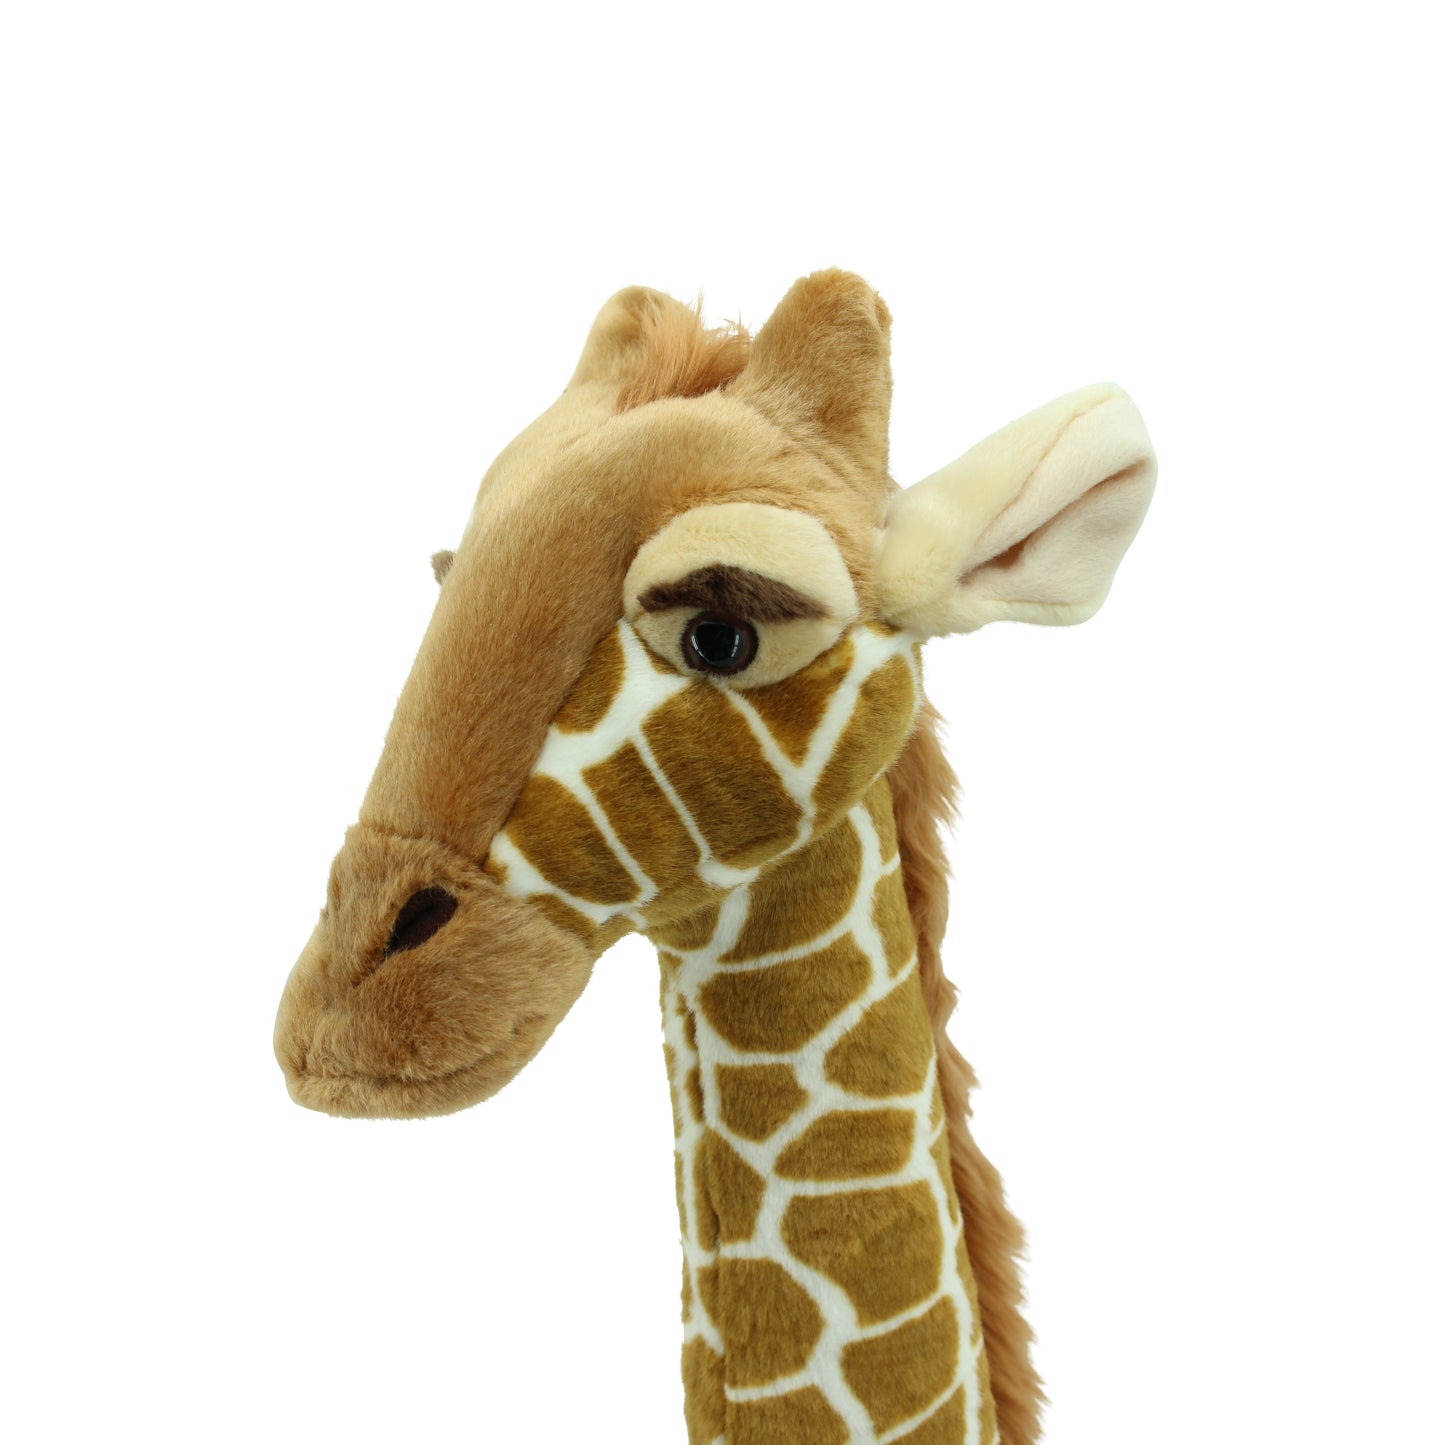 Sweety Toys Premium Edition 13661 Spielzeug Giraffe Greta die Giraffe zum Reiten Stehtier Standtier